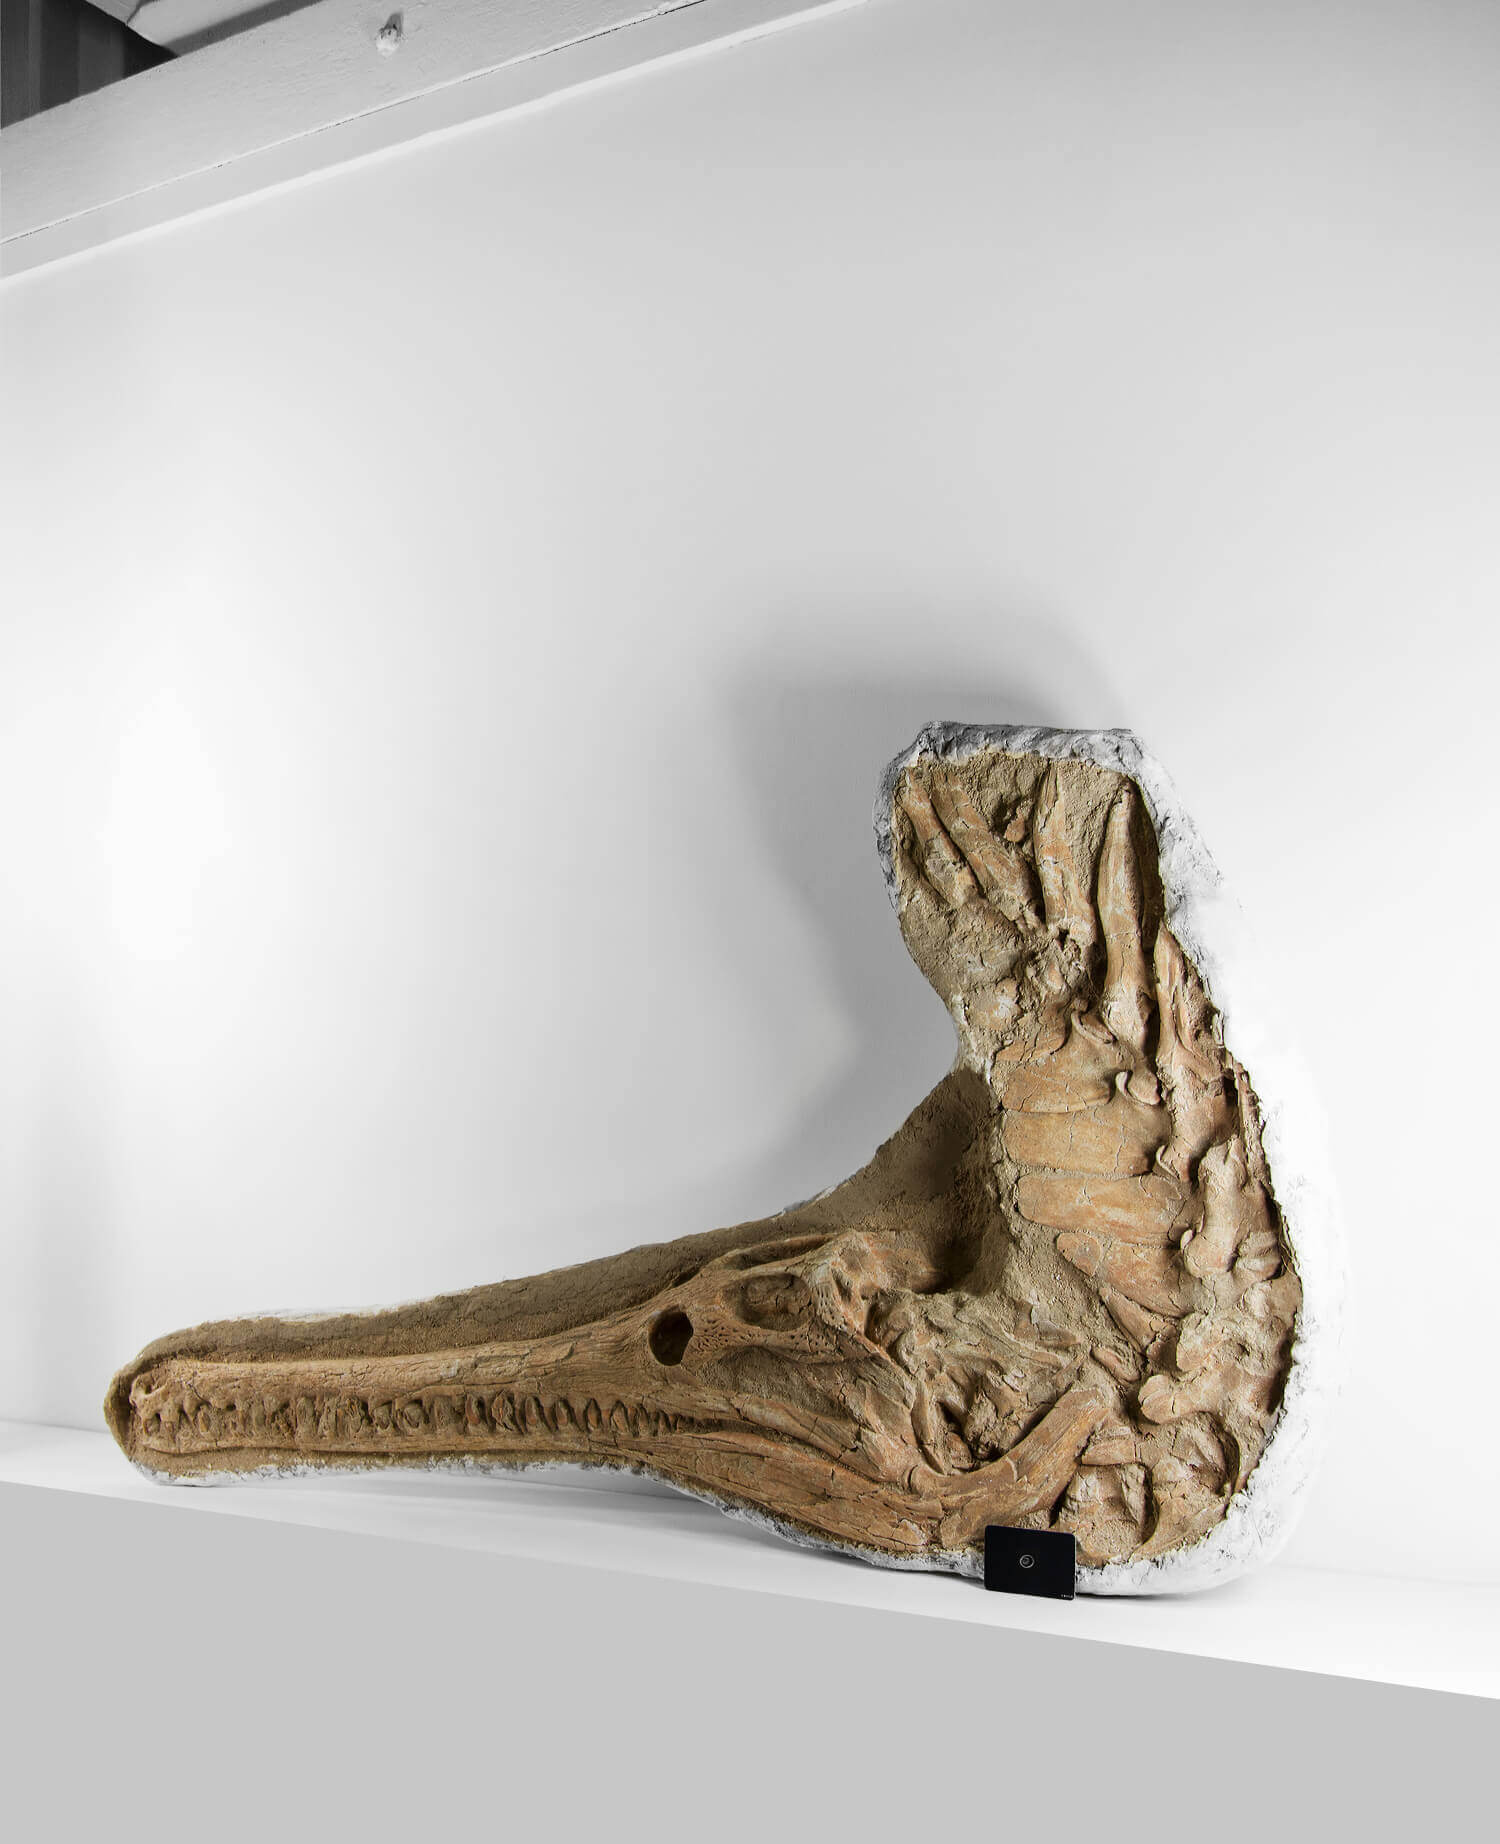 Fossil crocodile dyrosaurus